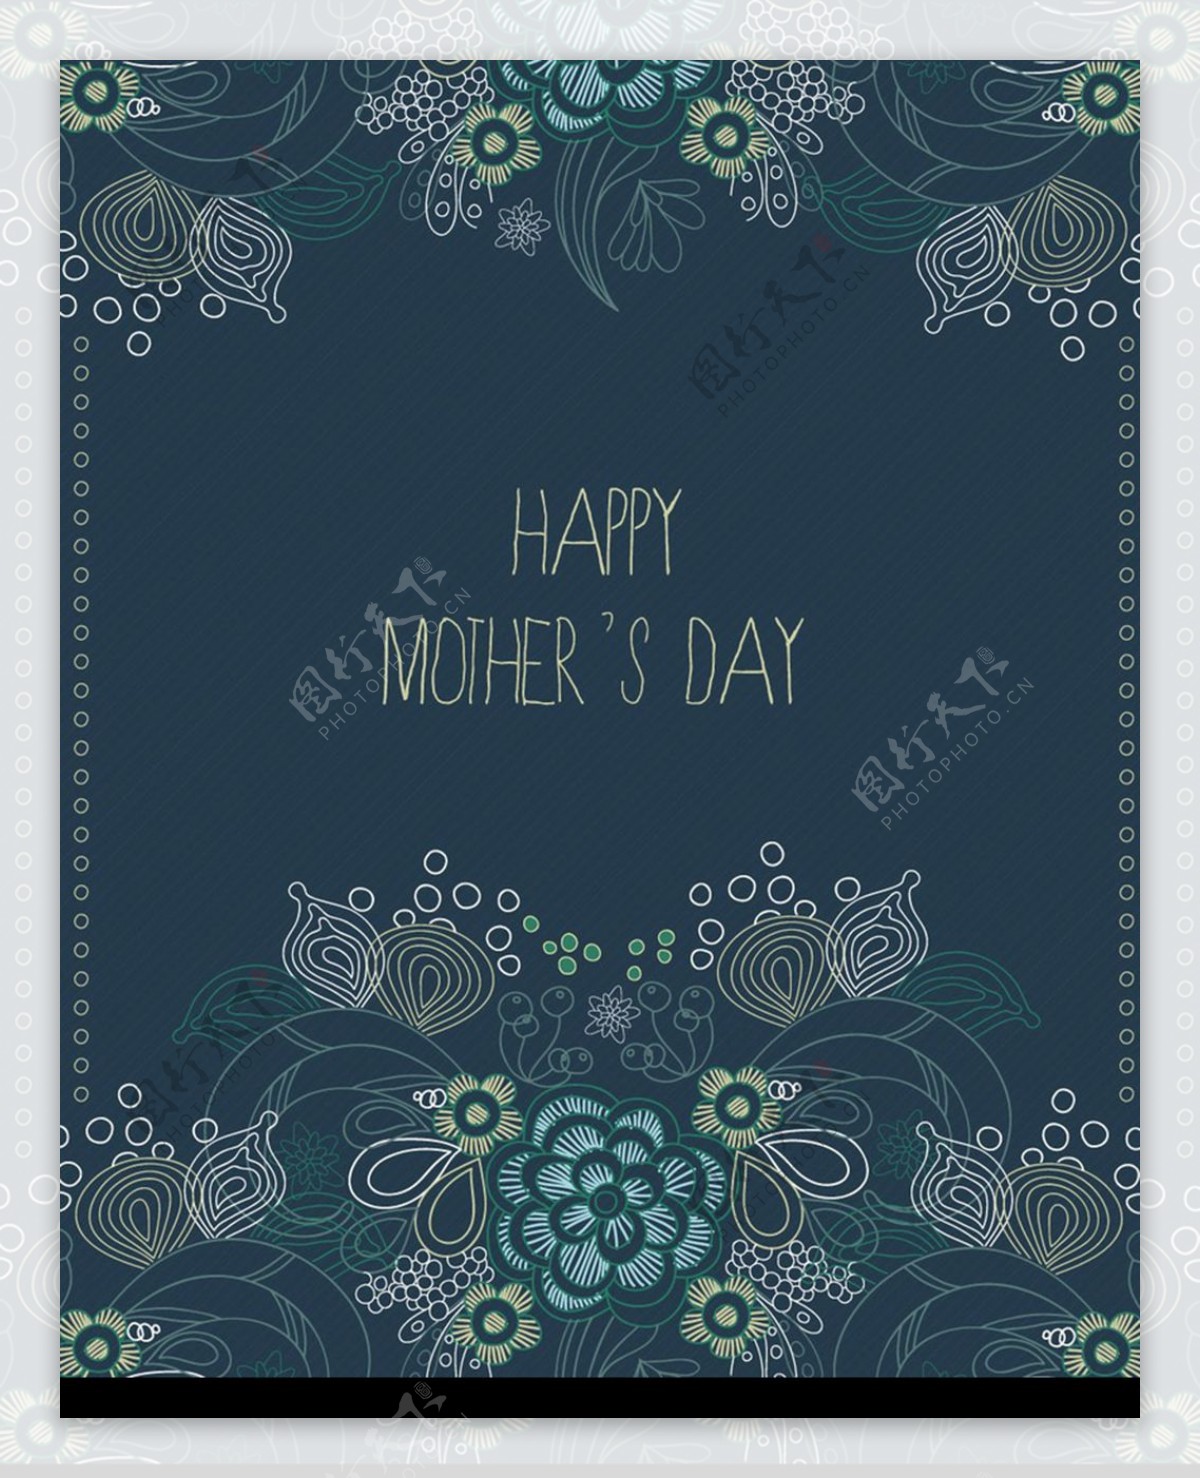 蓝色花纹背景边框母亲节卡片